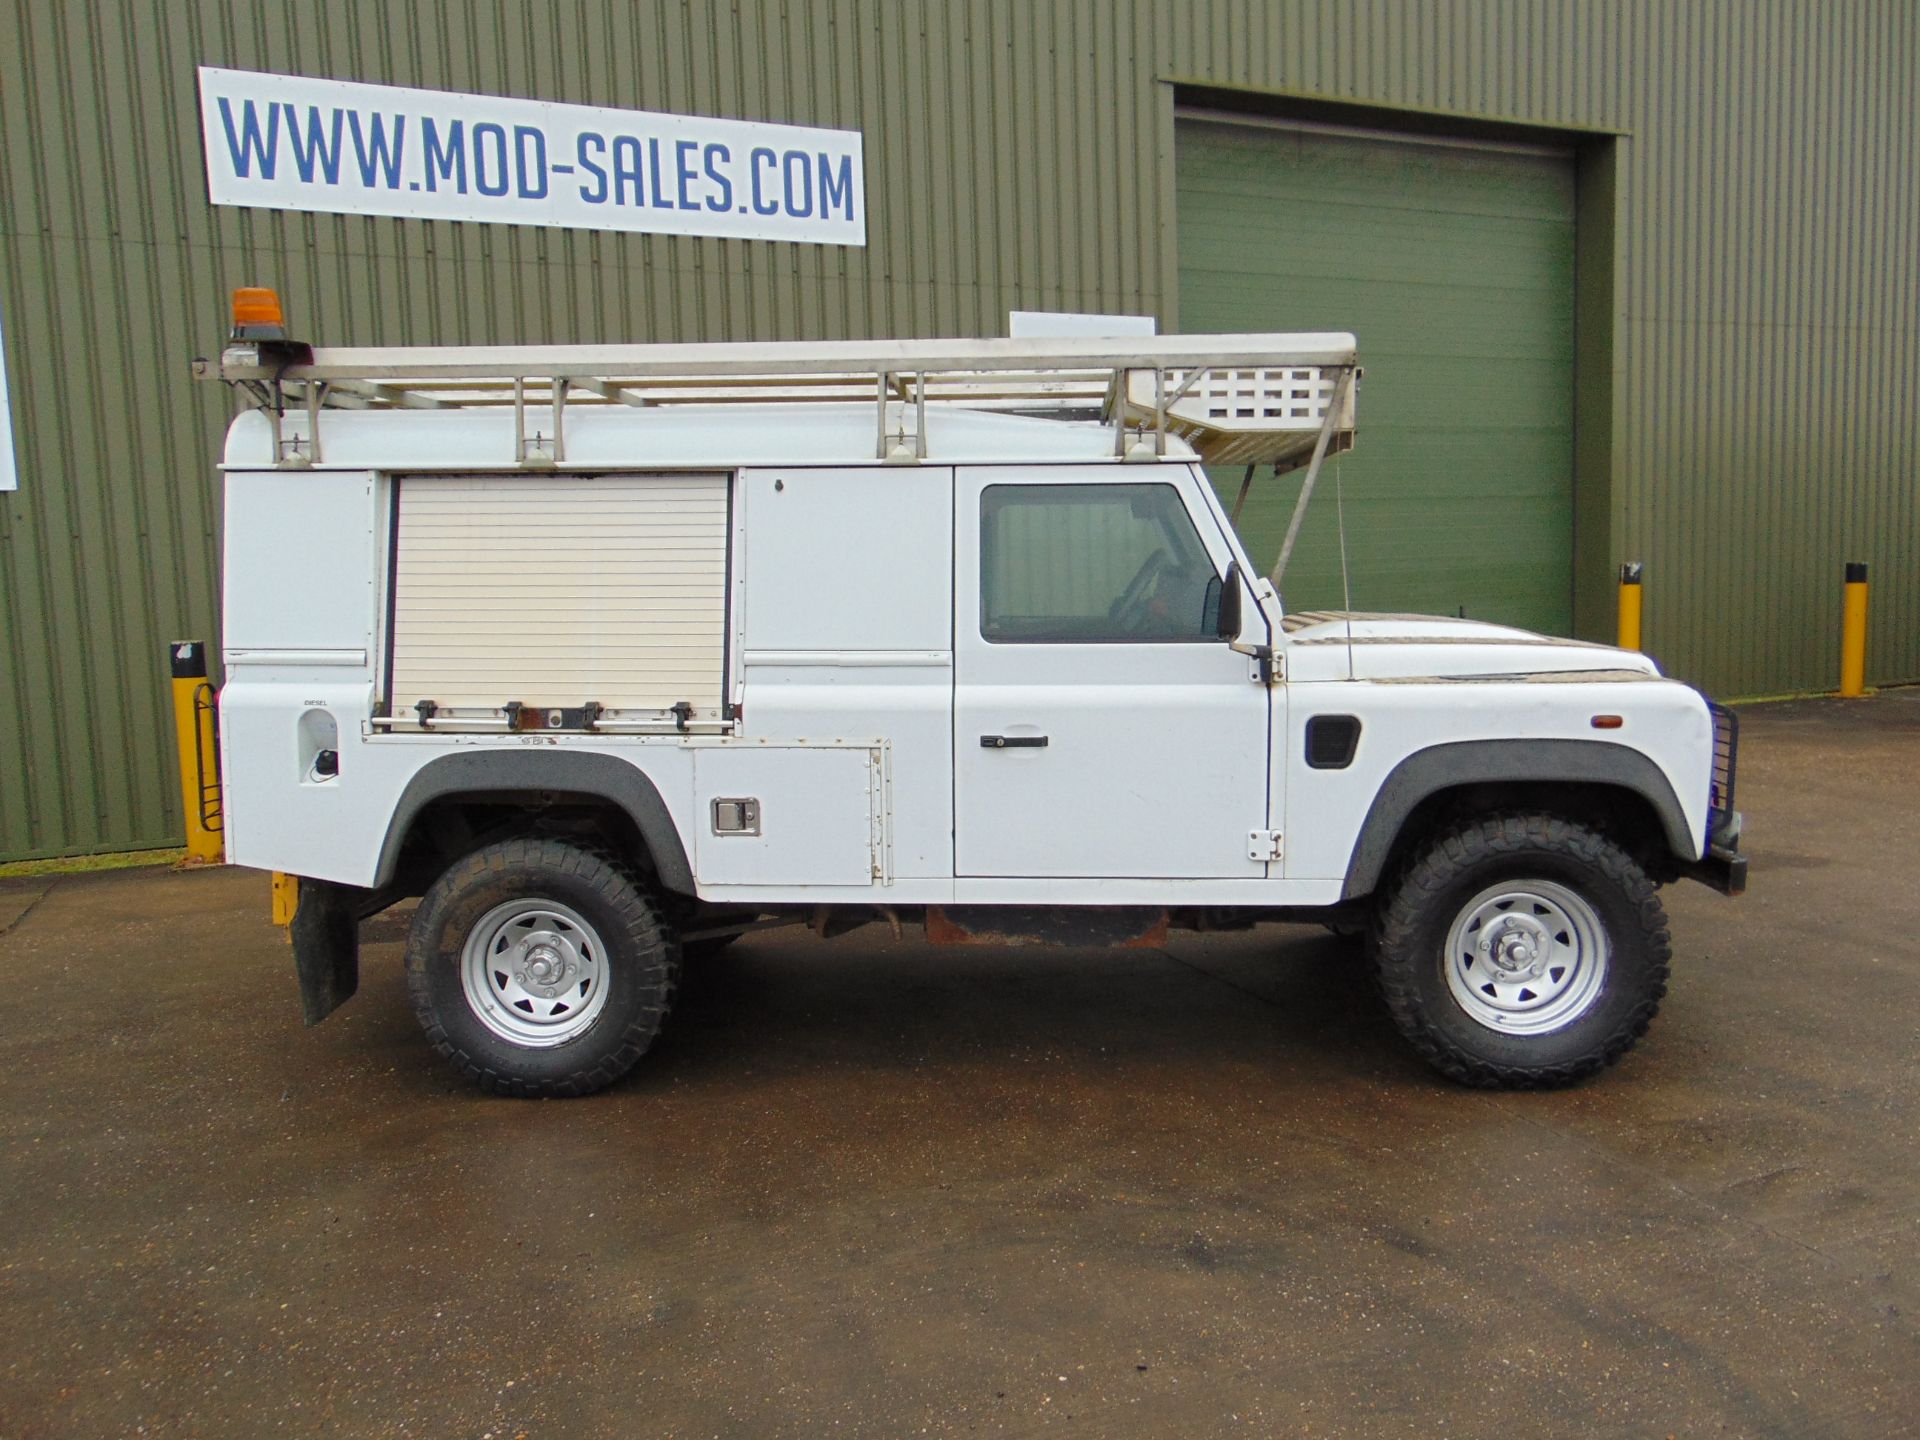 2011 Land Rover Defender 110 Puma hardtop 4x4 Utility vehicle (mobile workshop) - Image 5 of 31